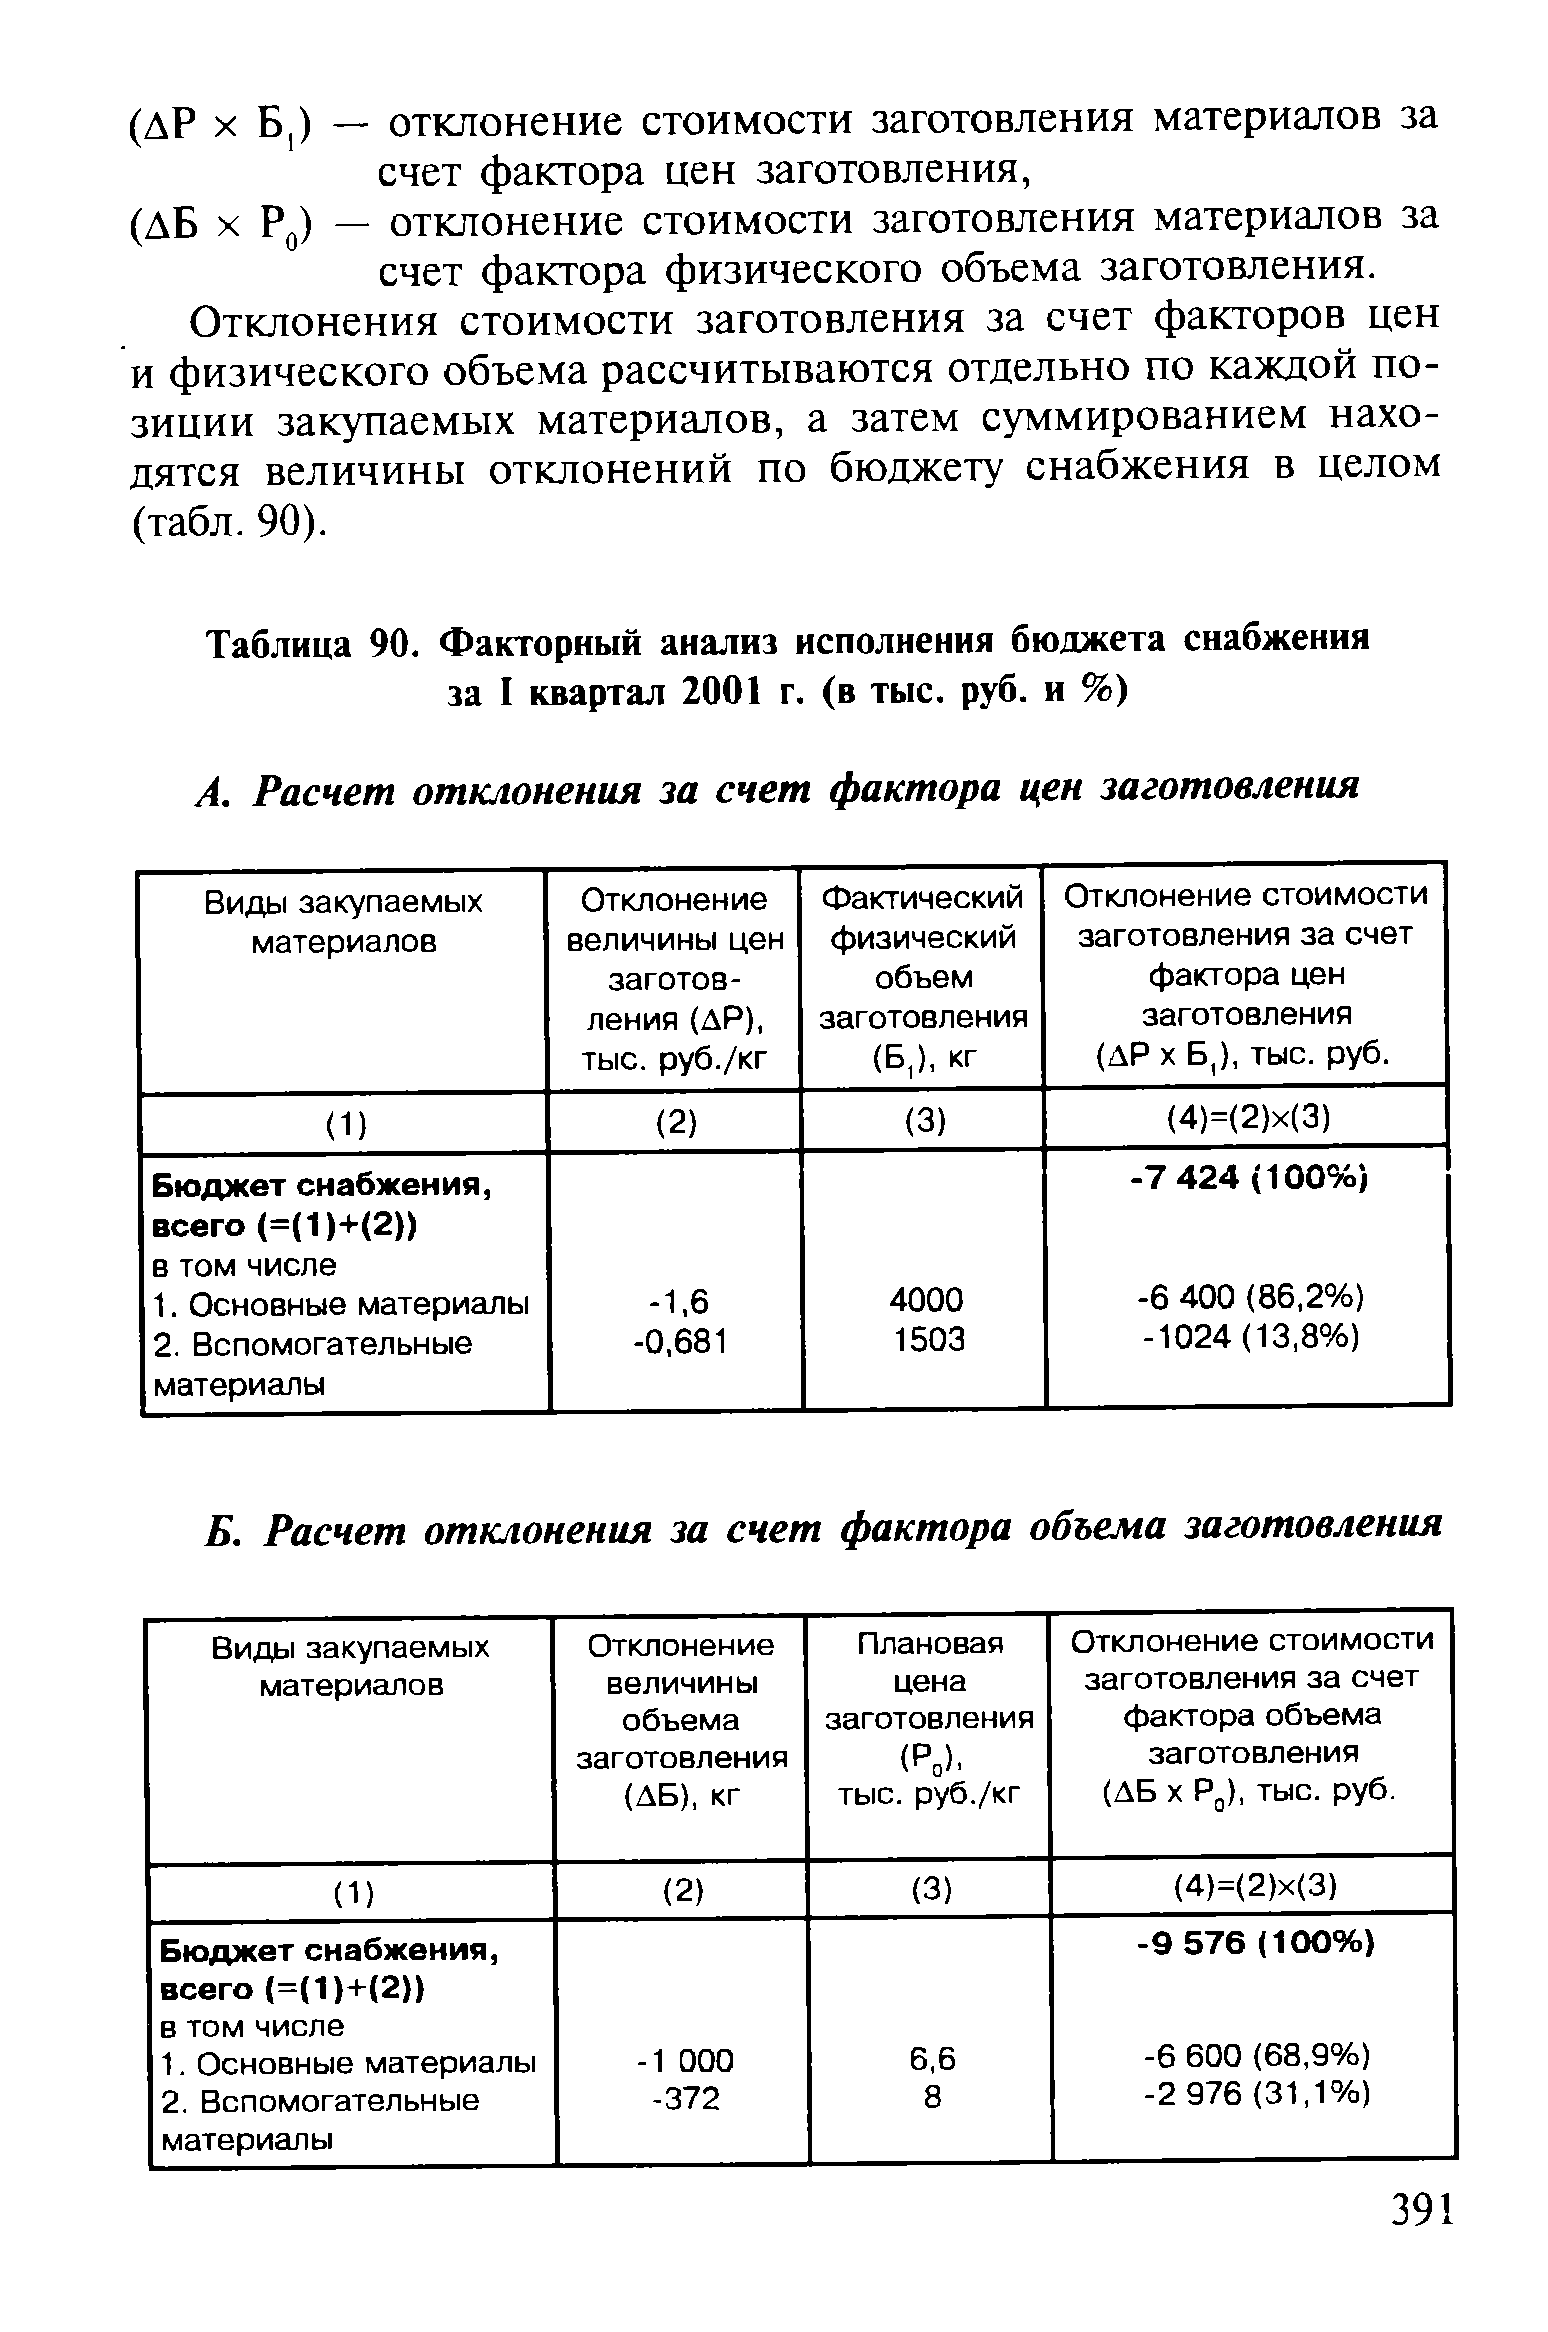 Таблица 90. Факторный анализ исполнения бюджета снабжения за I квартал 2001 г. (в тыс. руб. и %)
